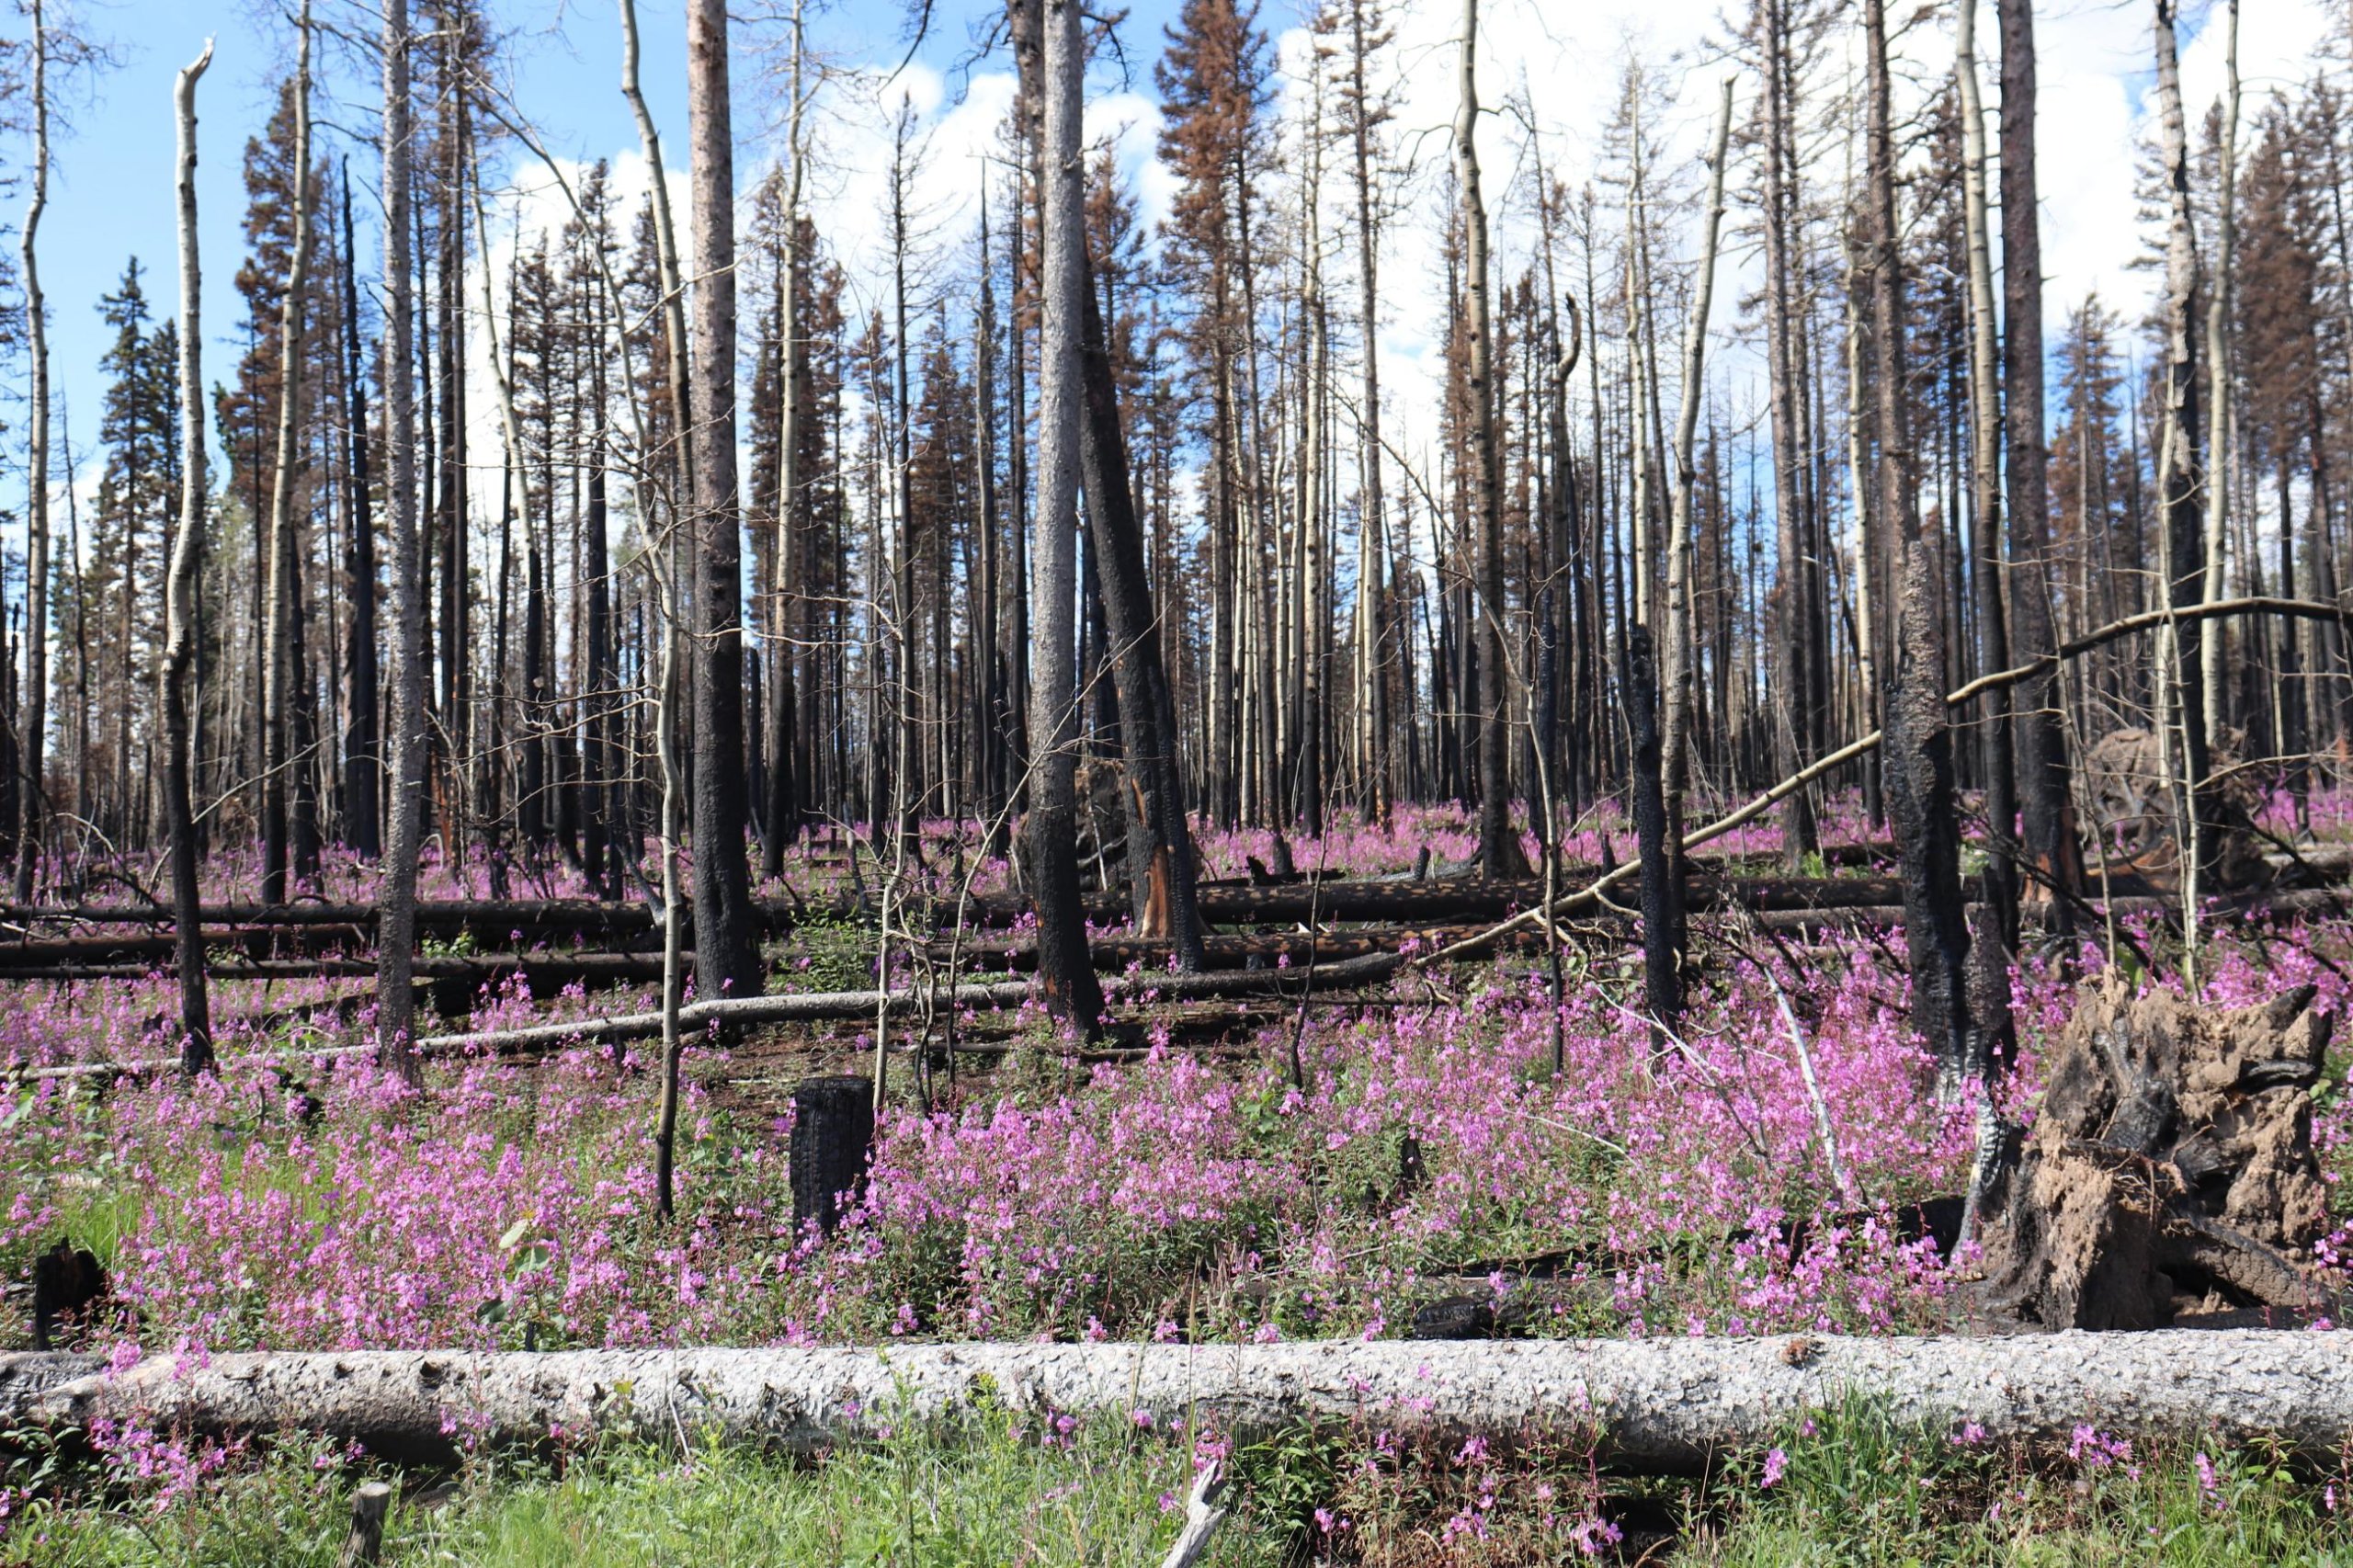 Federal legislation seeks to improve reforestation efforts after fires